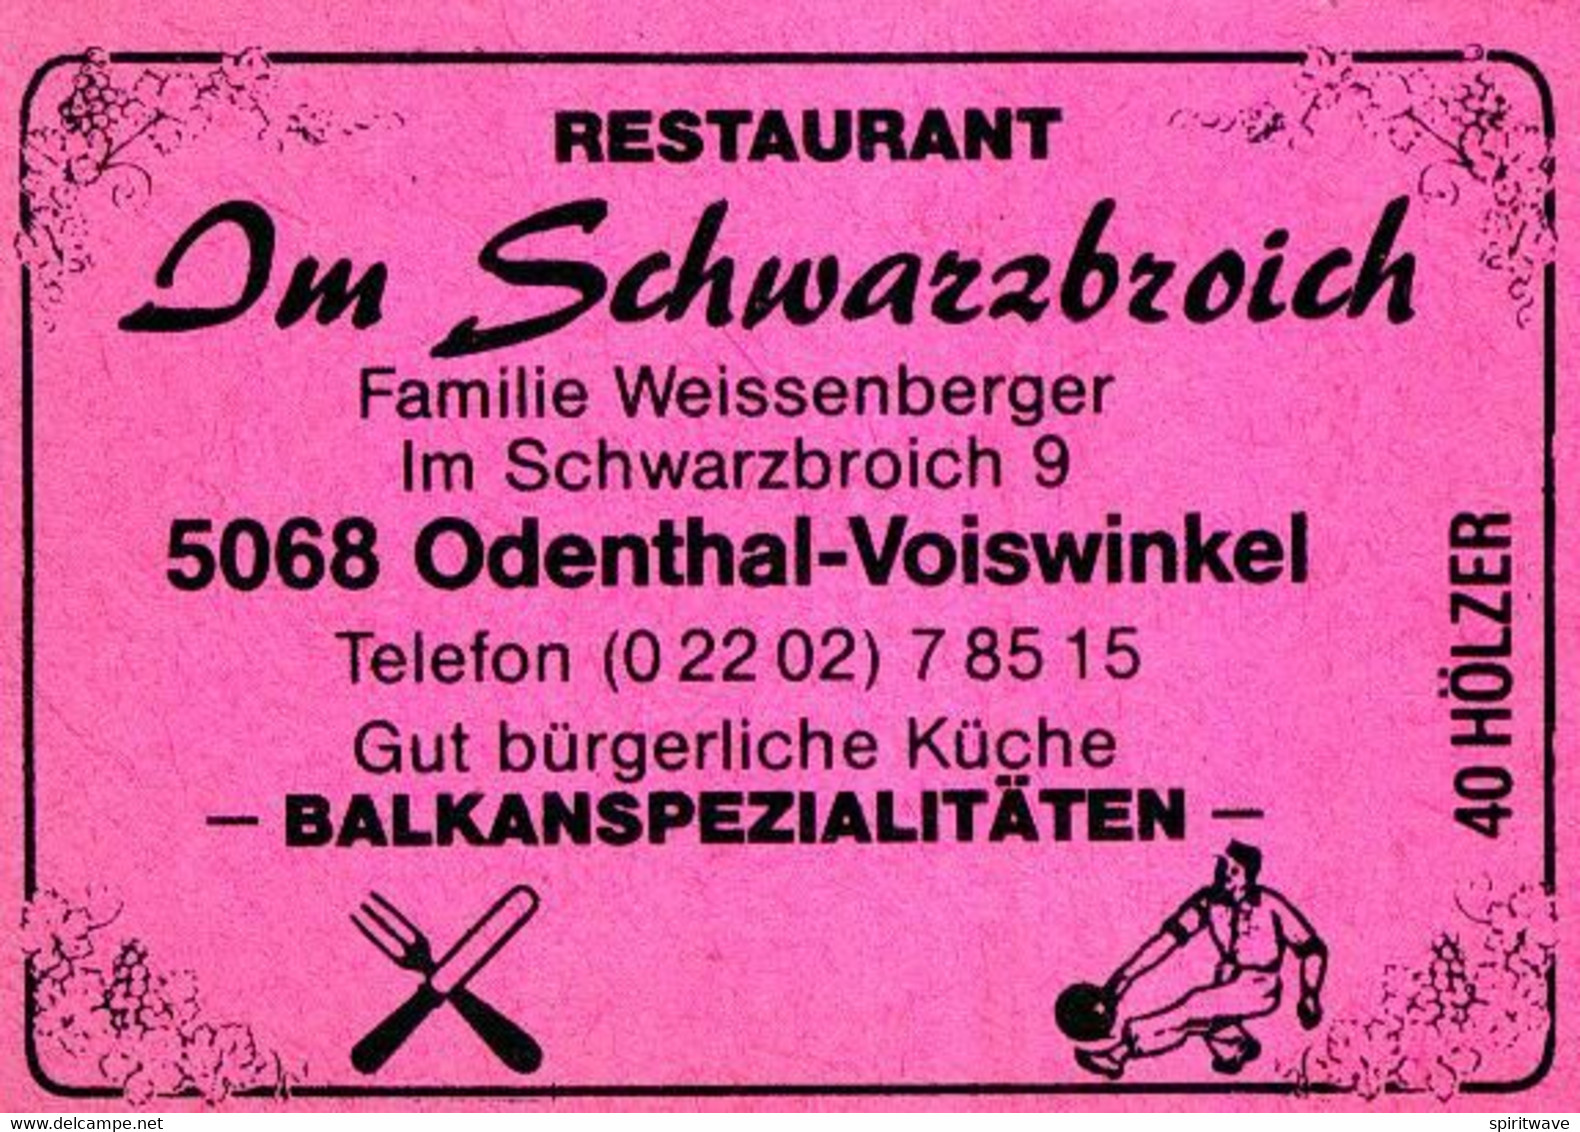 1 Altes Gasthausetikett, Restaurant Im Schwarzbroich, Familie Weissenberger, 5068 Odenthal-Voiswinkel #1160 - Zündholzschachteletiketten